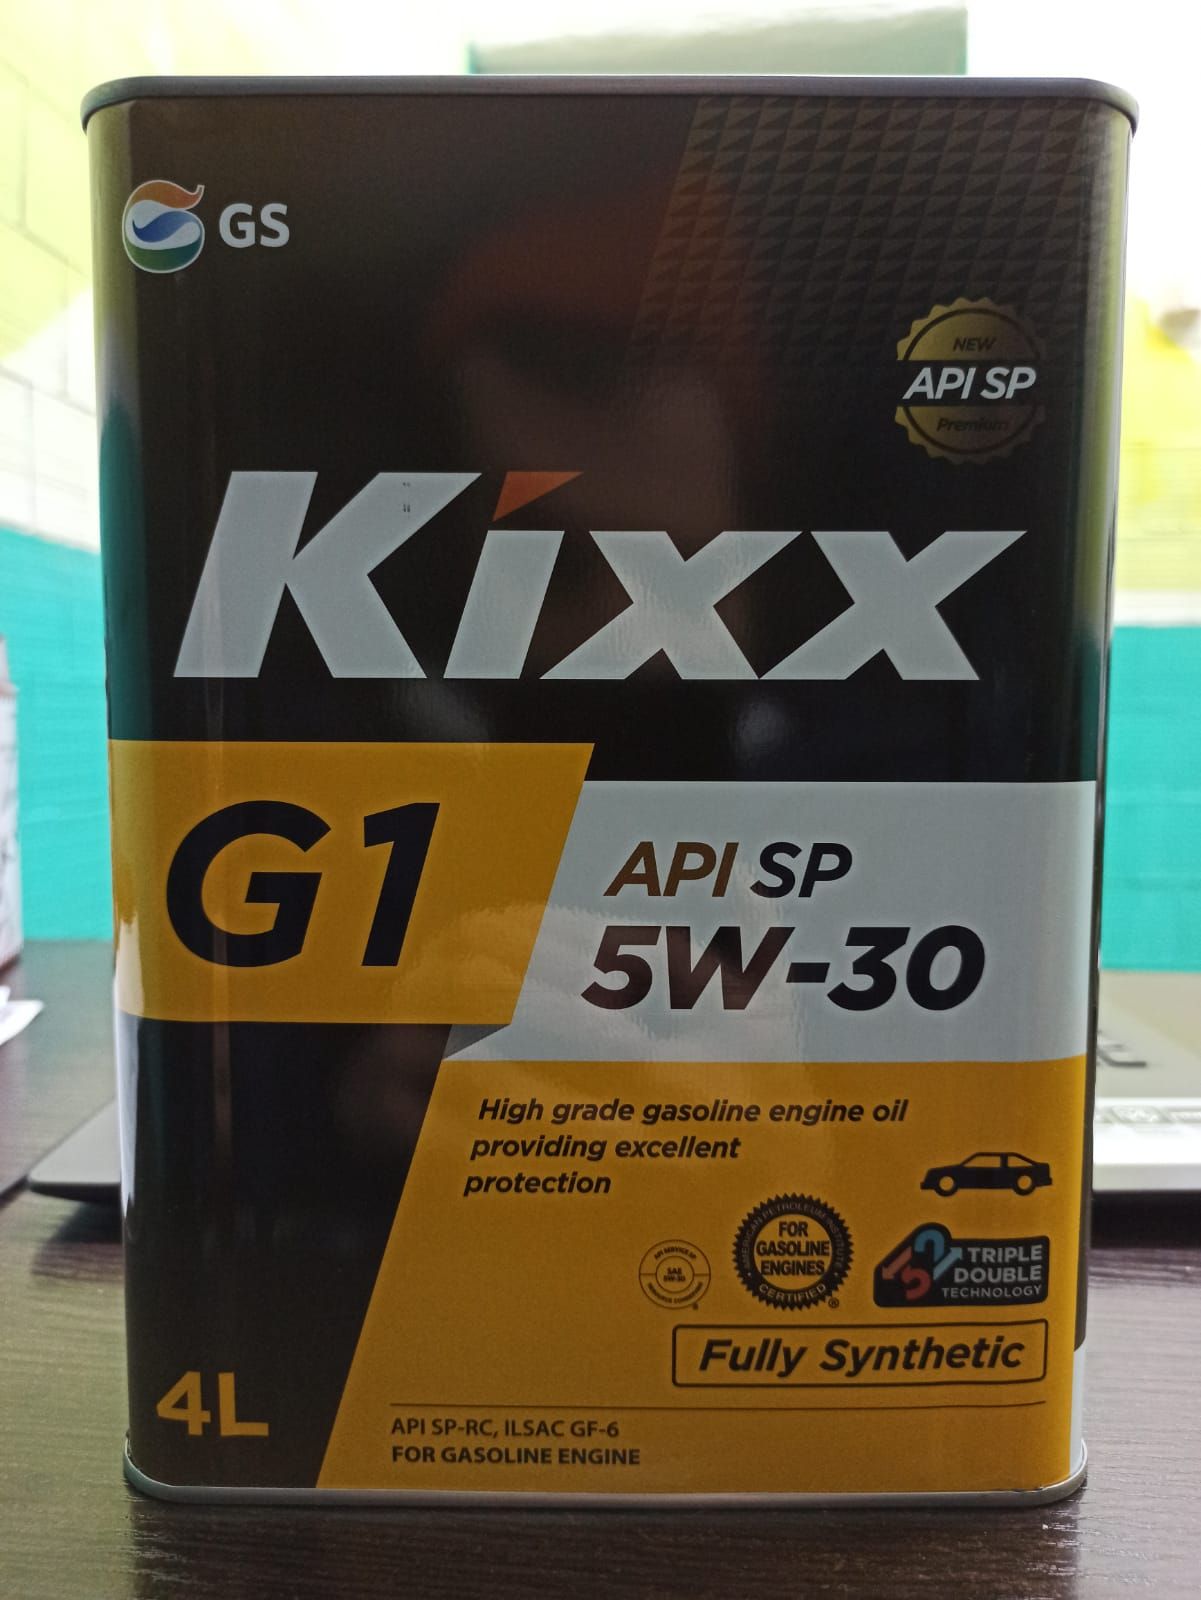 Масло kixx api sp. L215344te1 масло моторное Kixx g1 SP. L215344te1. Кикс 5w30 API SP. L215344te1 Kixx масло моторное Kixx g1 SP 5w-30 /4л синт..